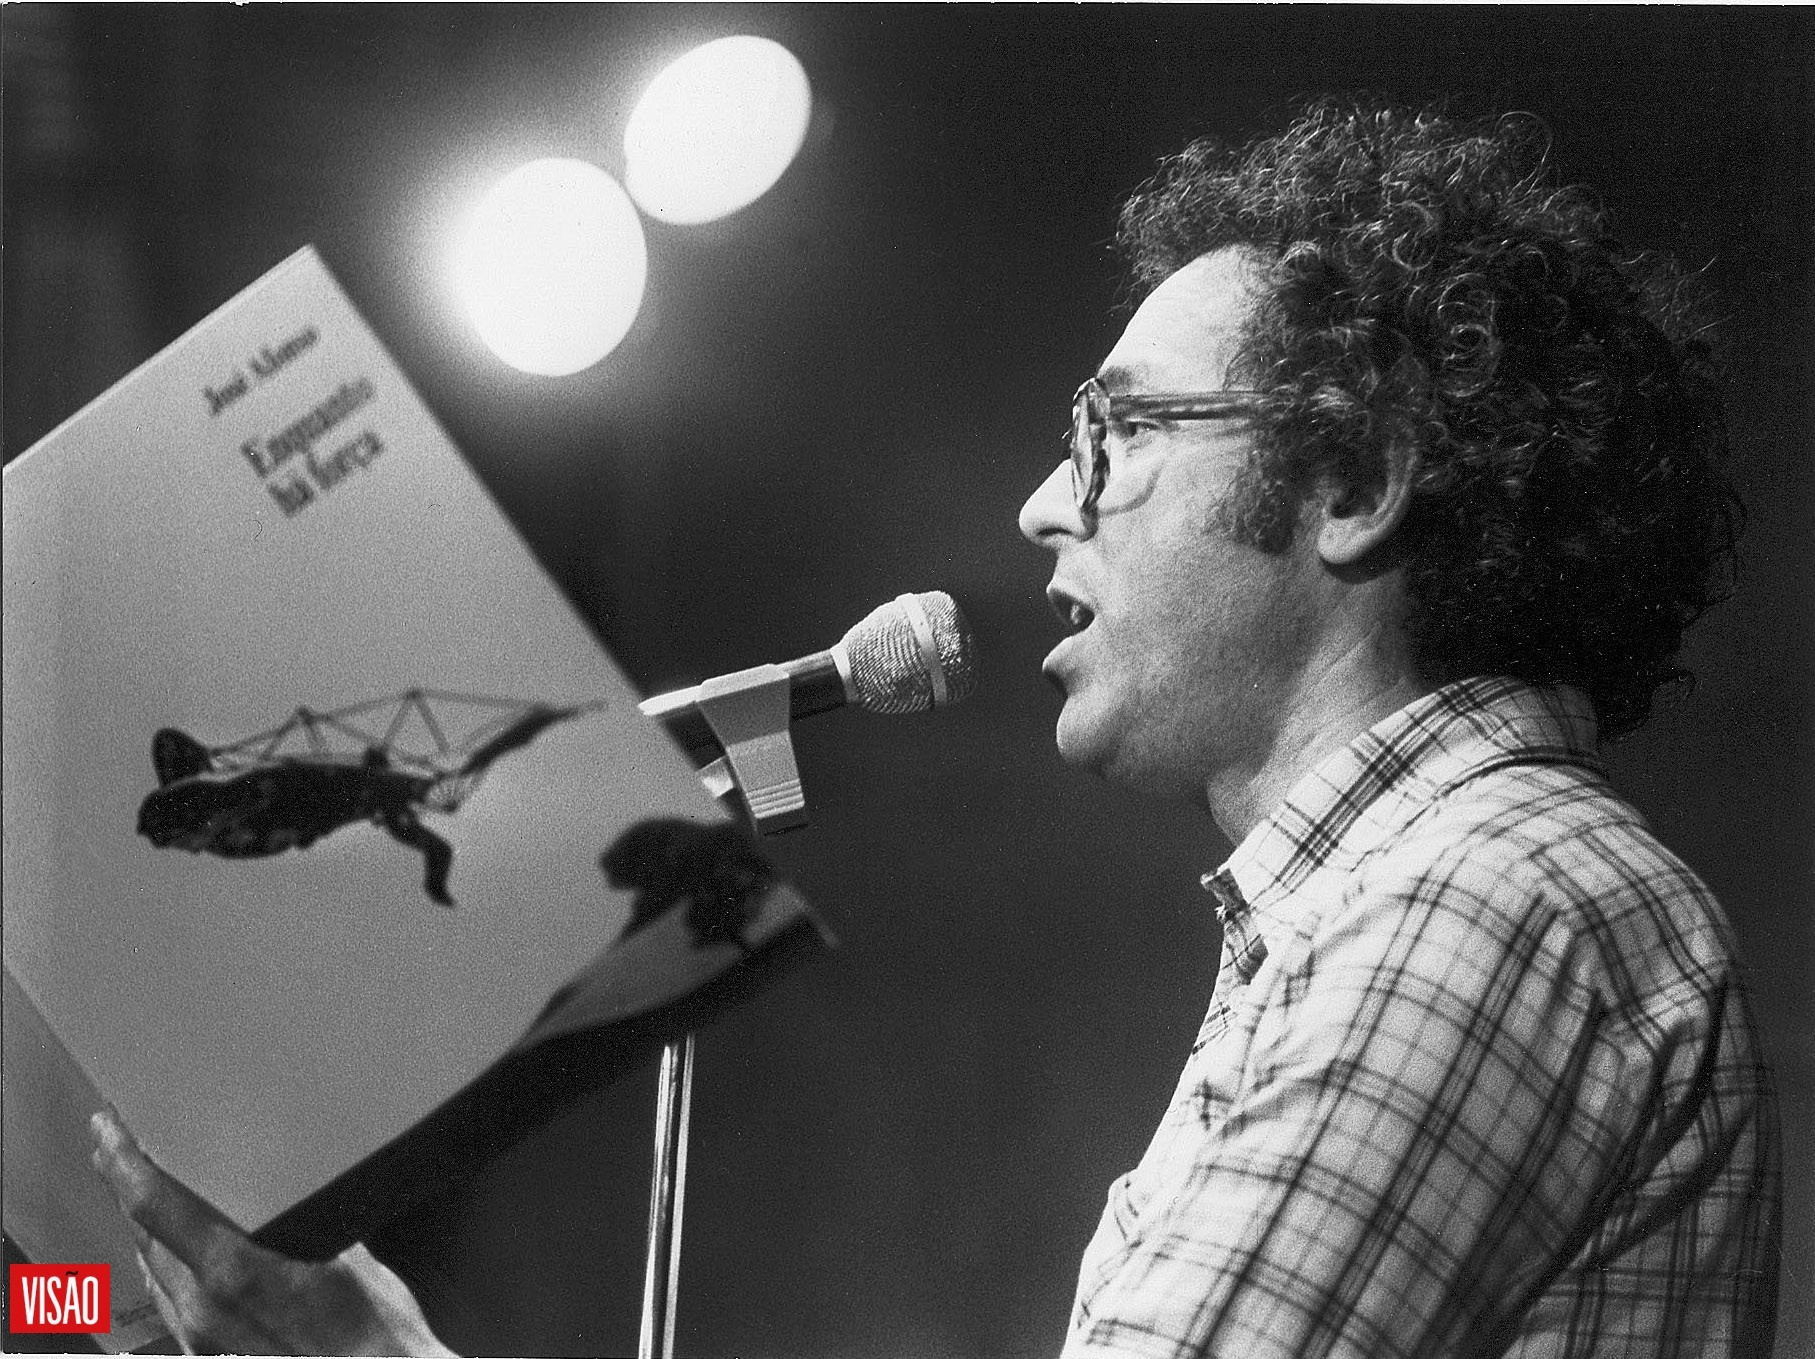 De Zeca Afonso a Adriano Correia de Oliveira. O papel da música de intervenção na revolução de 1974